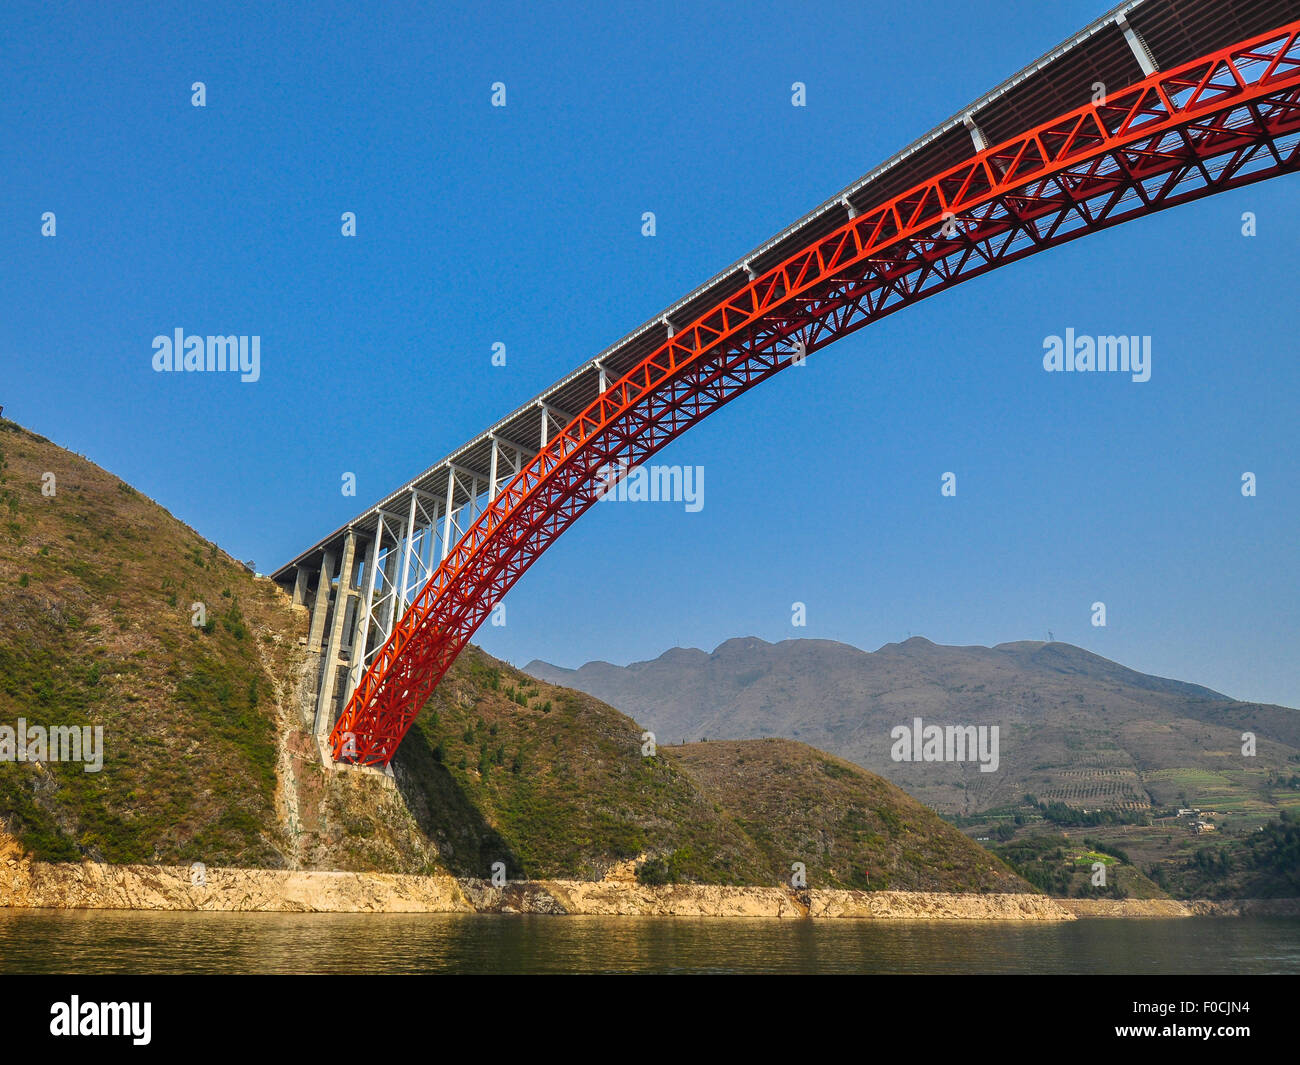 Daning River Bridge, Wushan, Chongqing, China Stock Photo